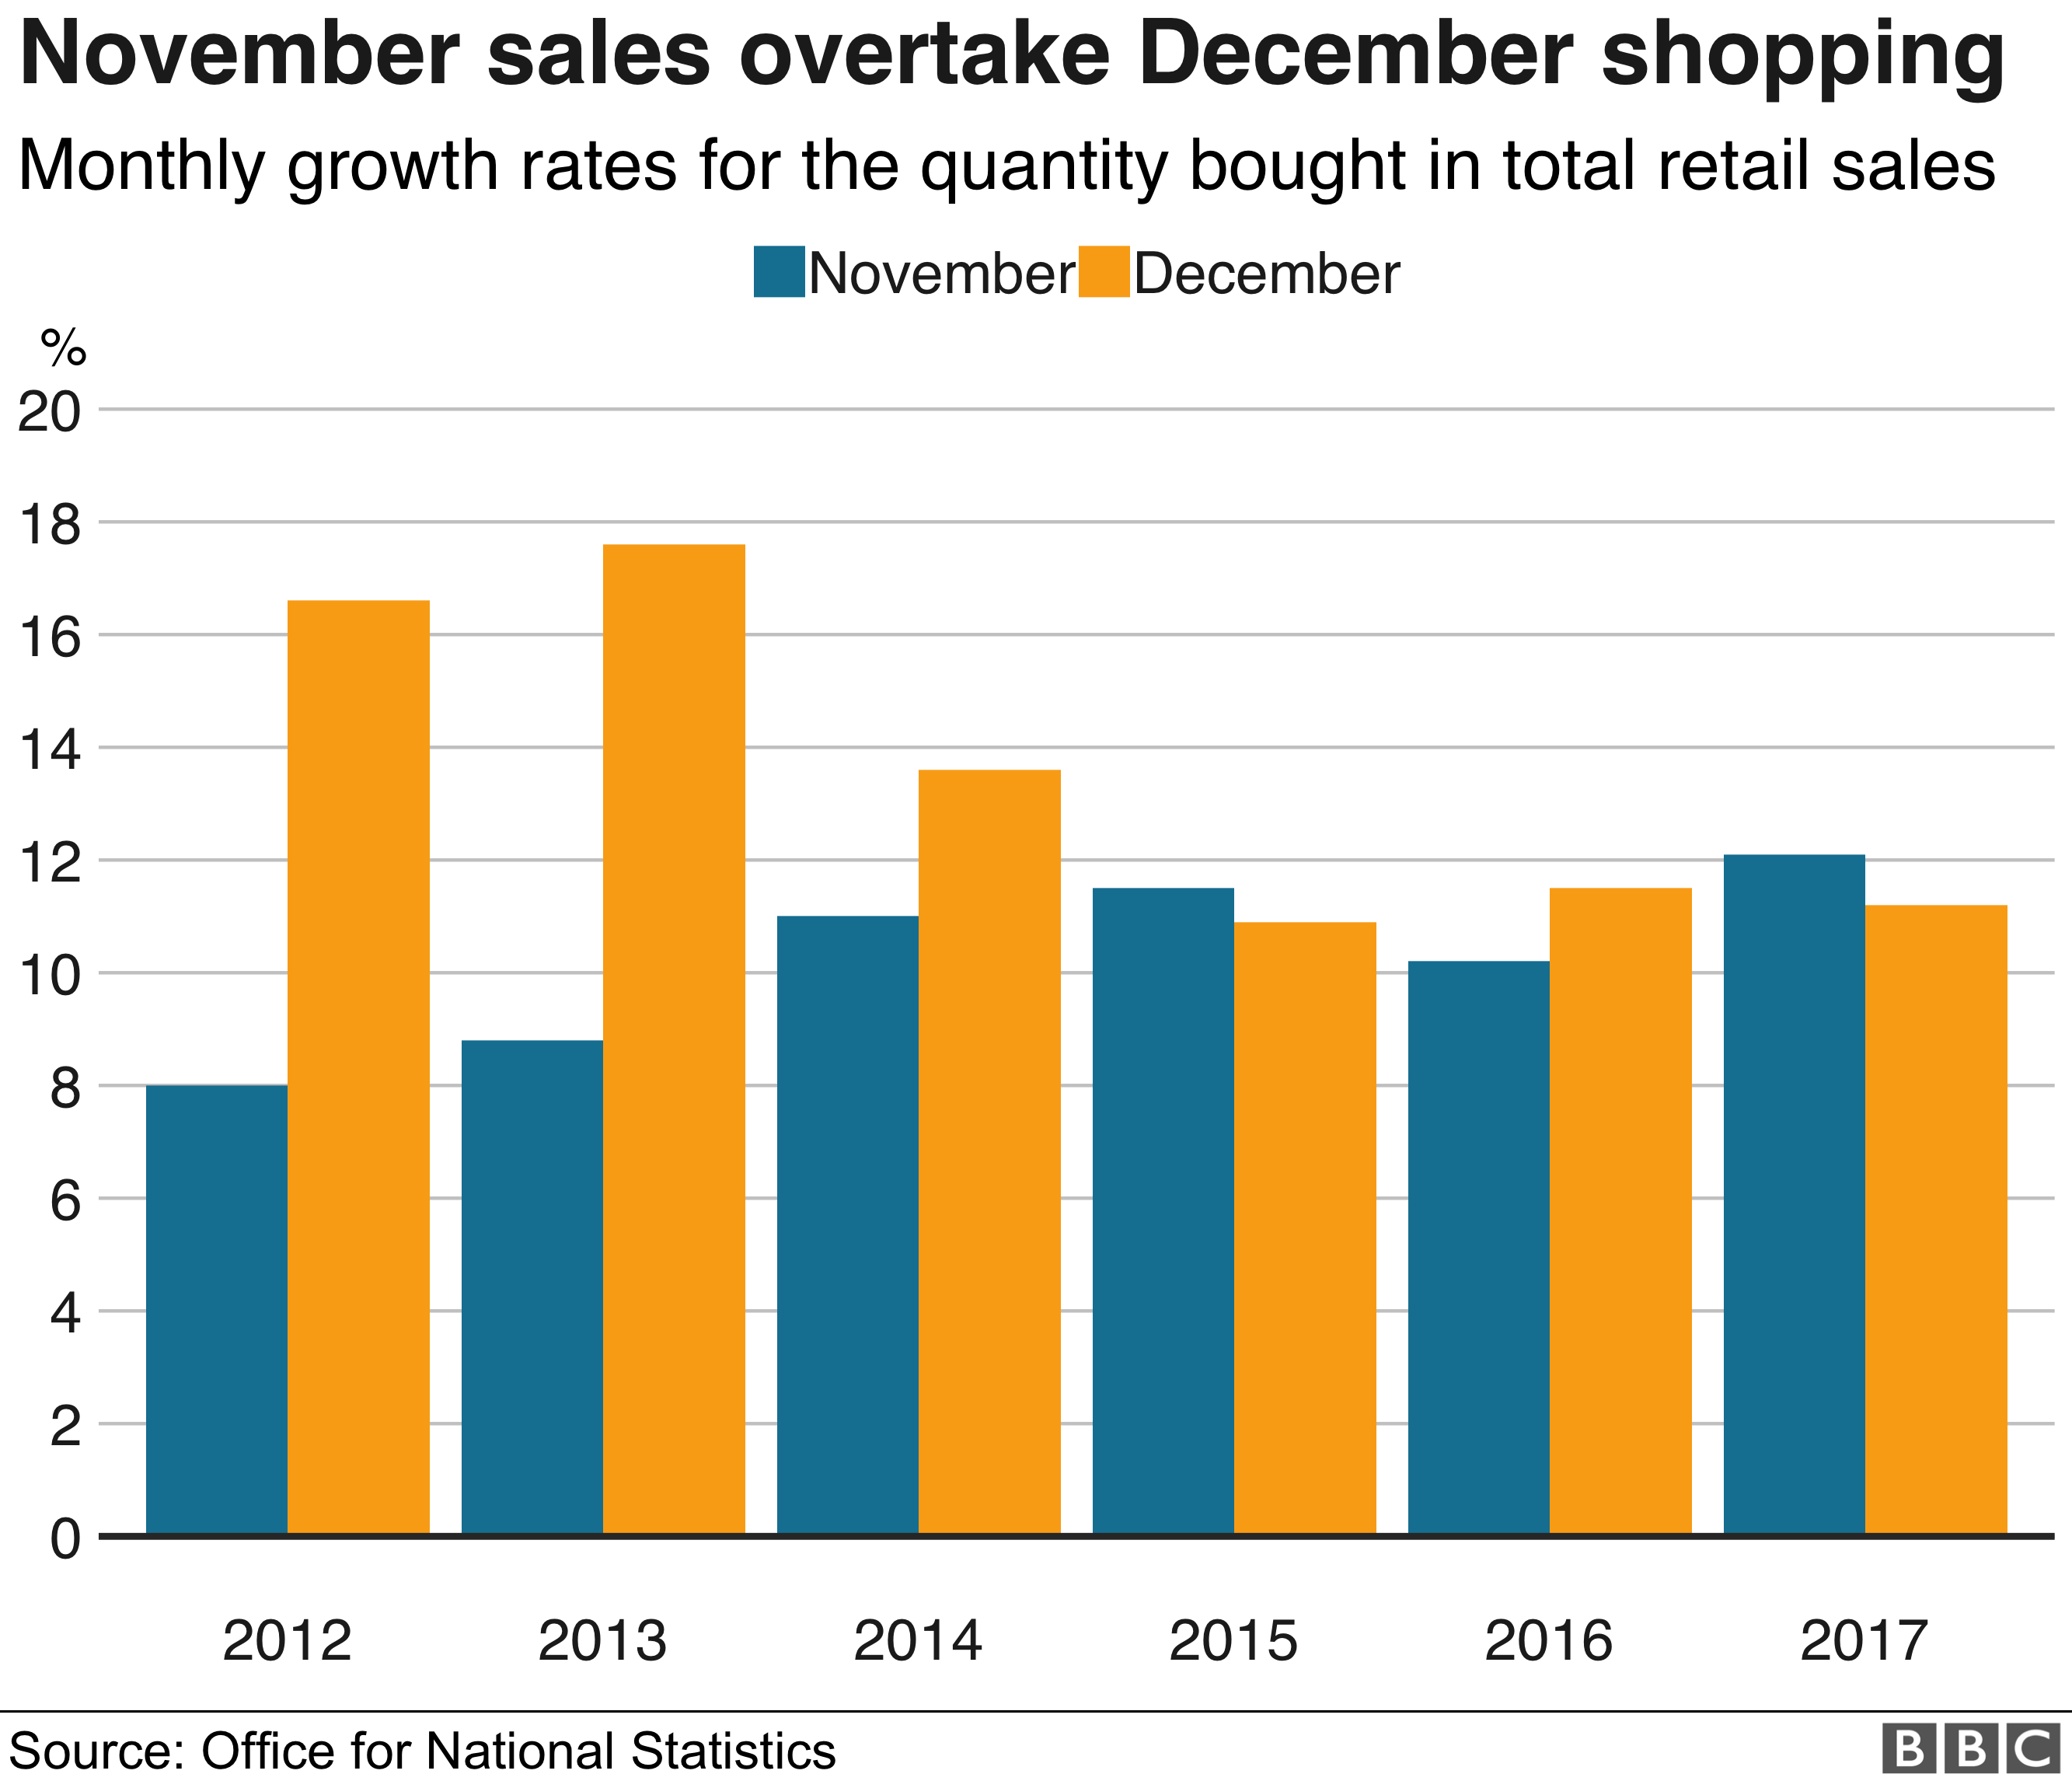 Диаграмма, показывающая ежемесячные темпы роста количества покупок в общих розничных расходах в ноябре и декабре с 2010 по 2017 год.